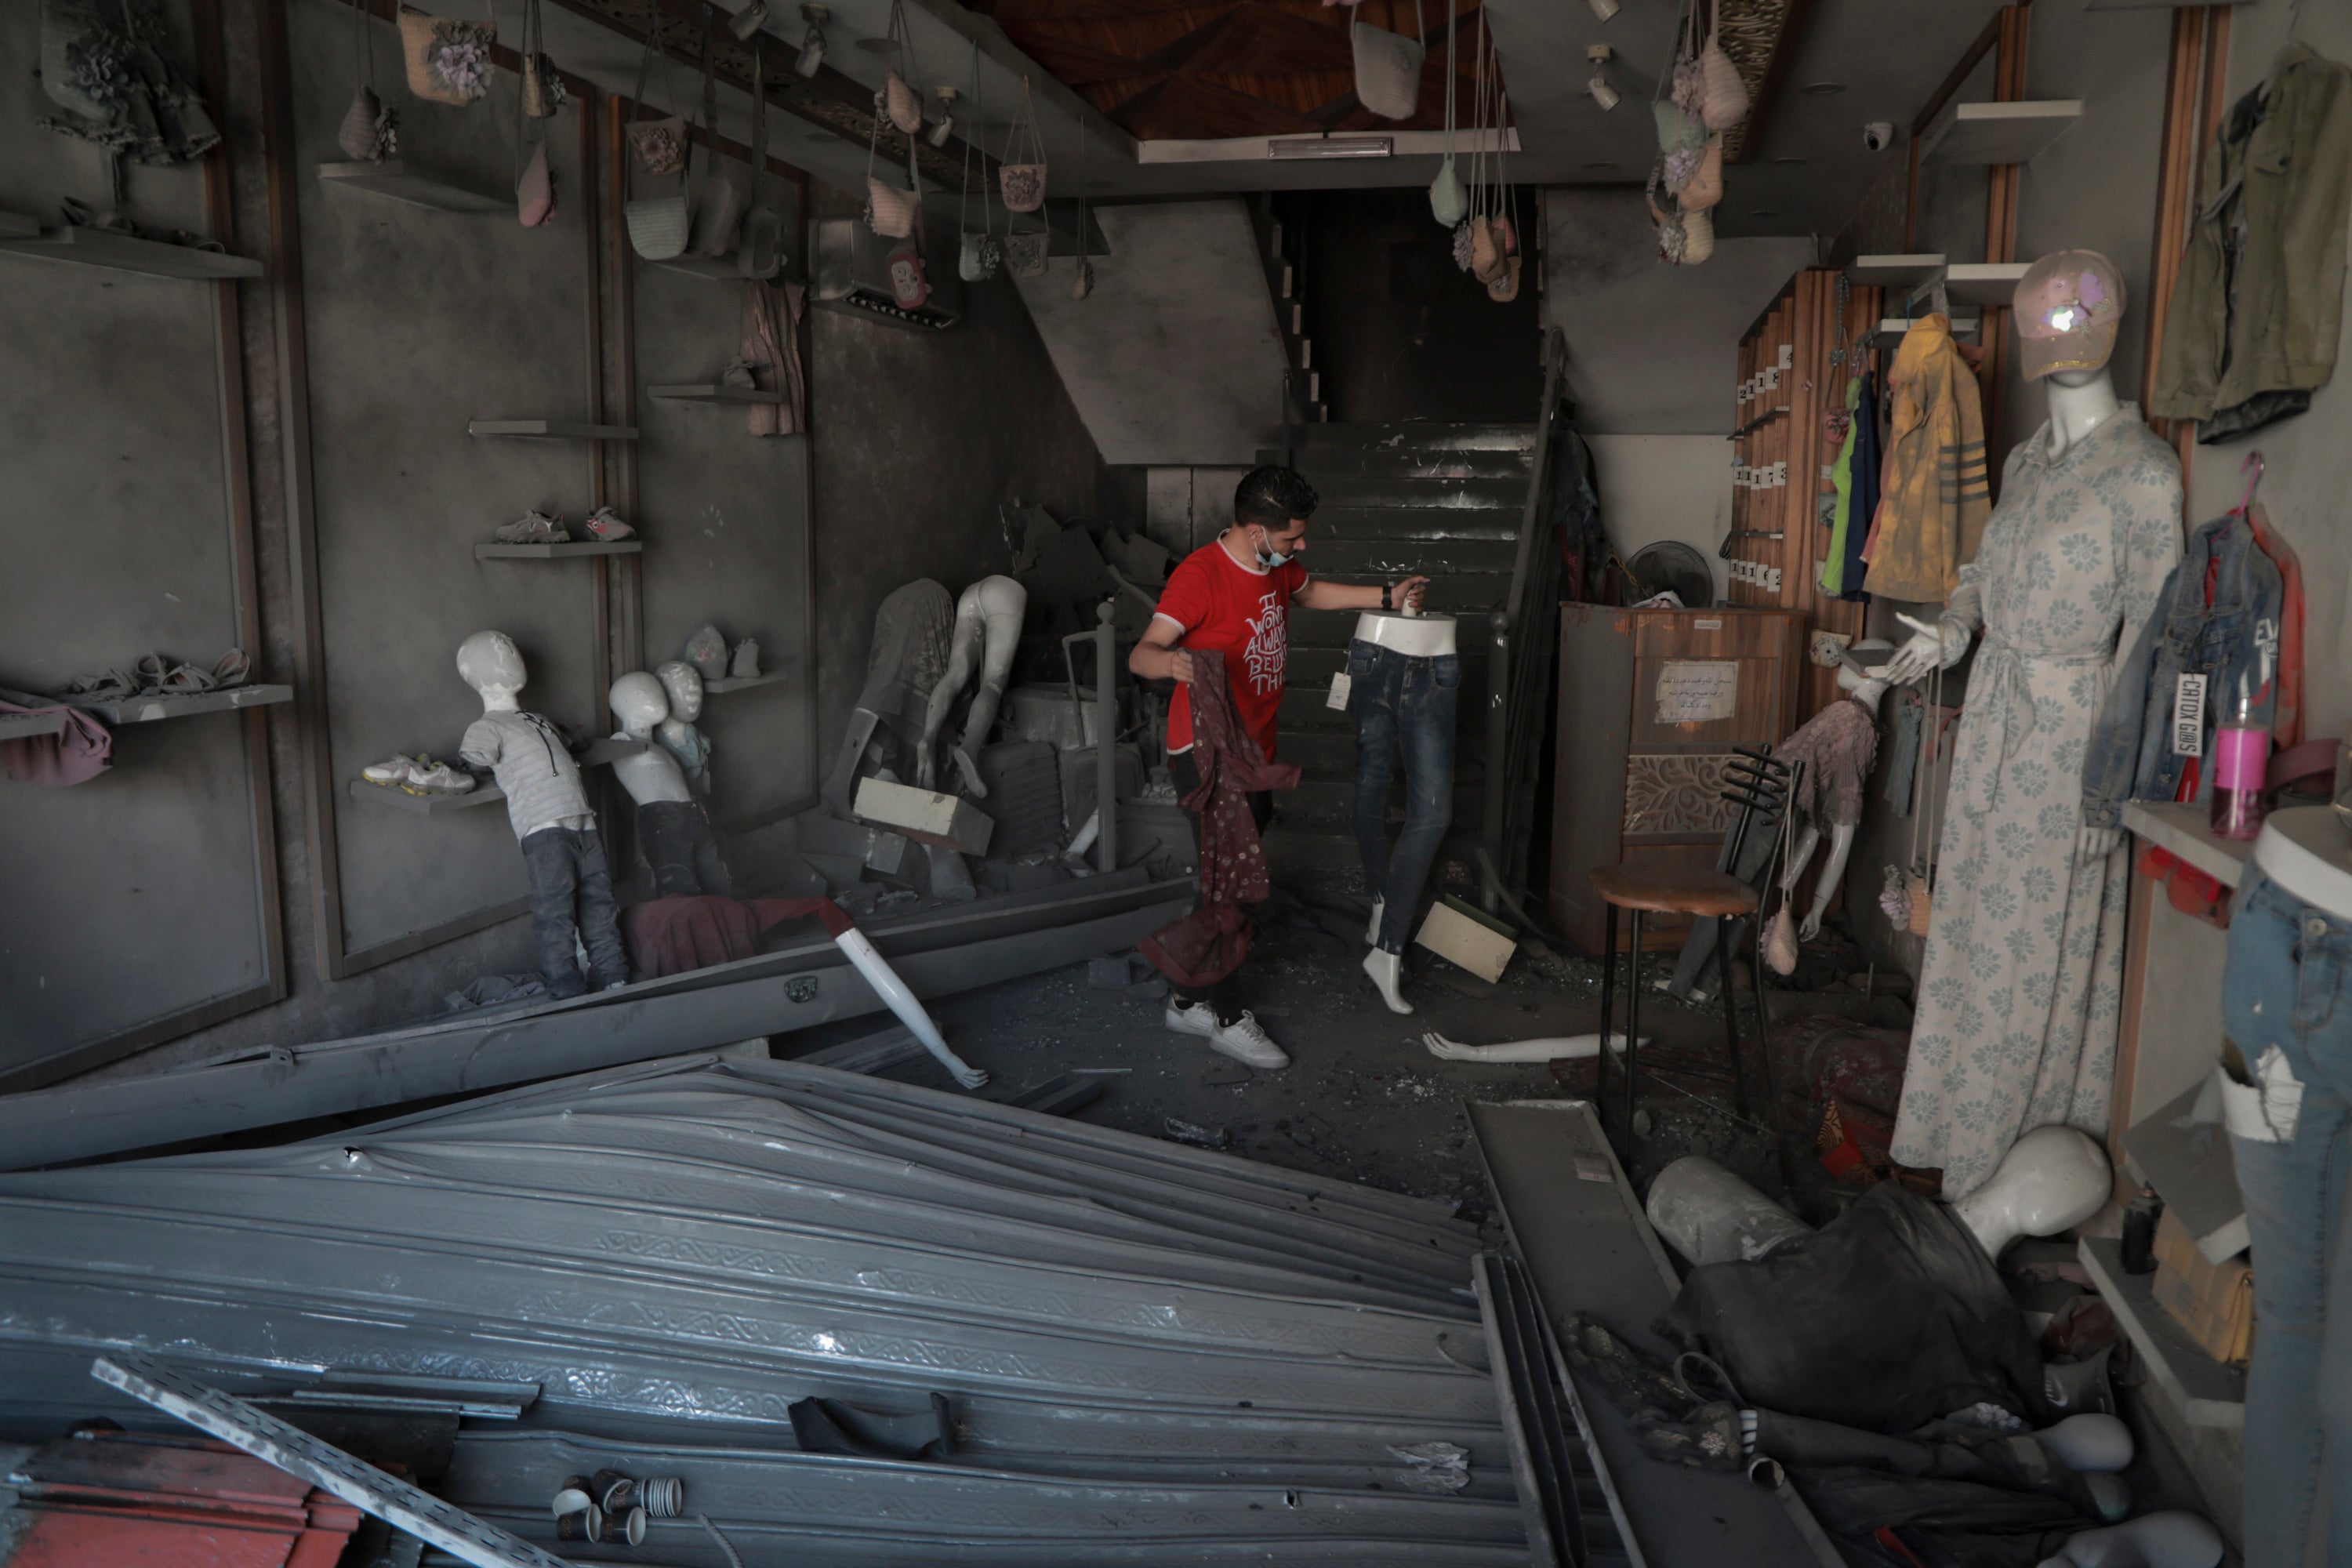 Bilal Mansour surveys his bombed-out shop